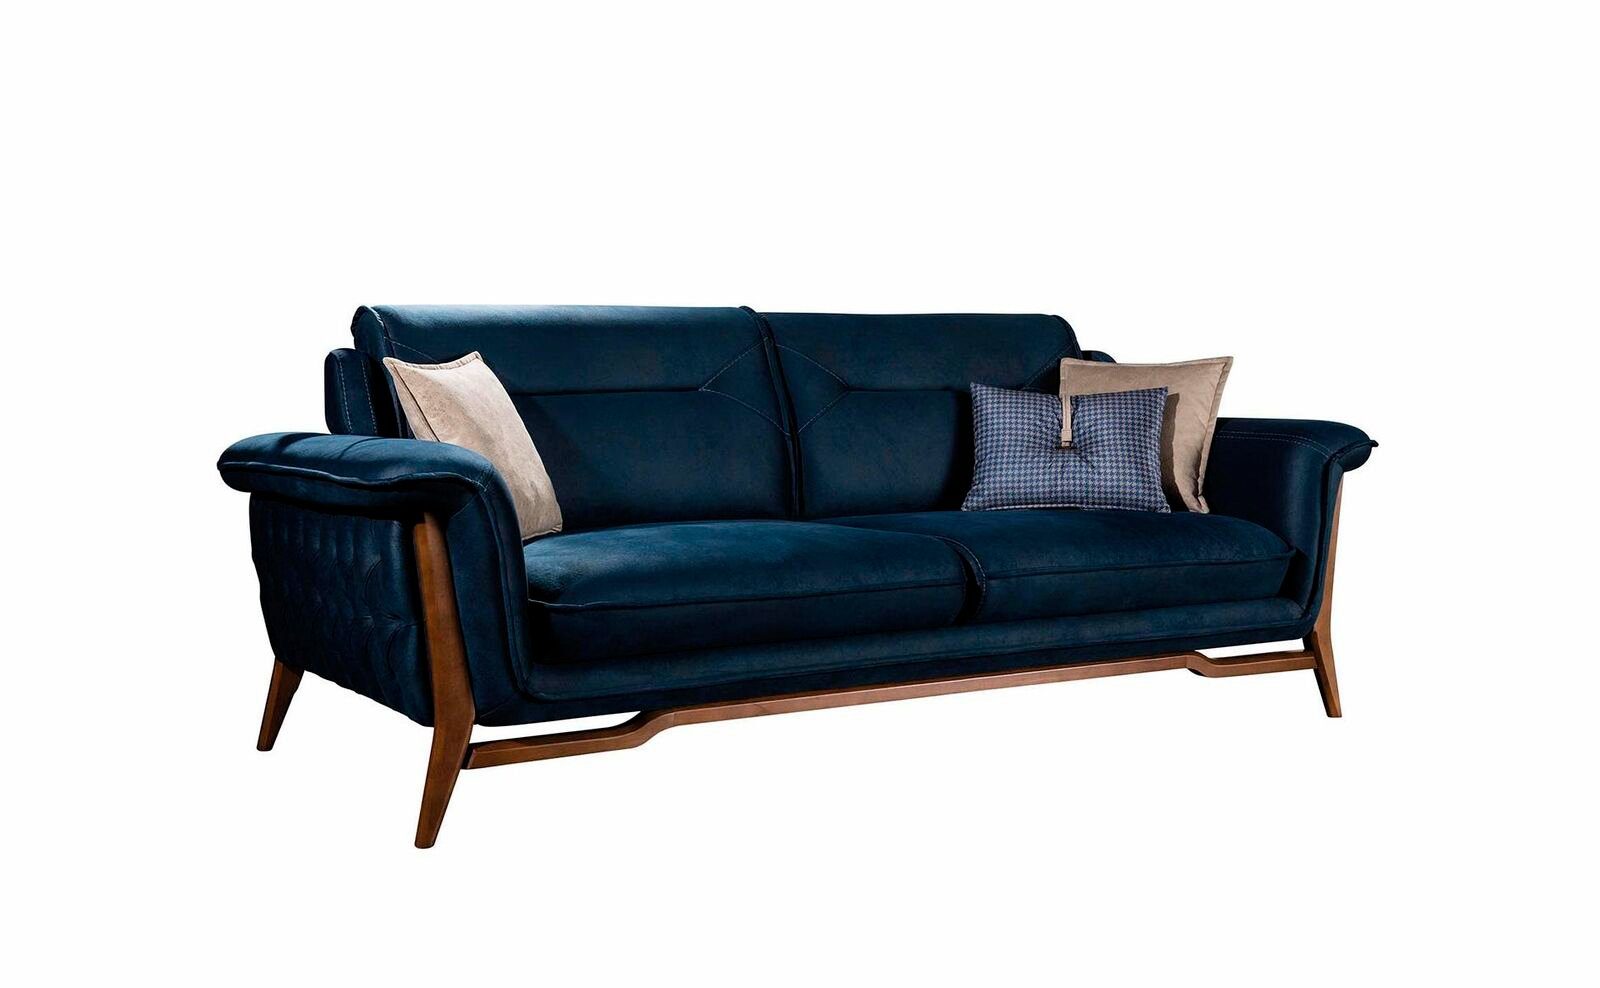 Sofa Stil, Textil JVmoebel Luxus Made Blaues Teile, Wohnzimmercouch Sitzer Europe Edler Sofa in 1 Dreisitzer